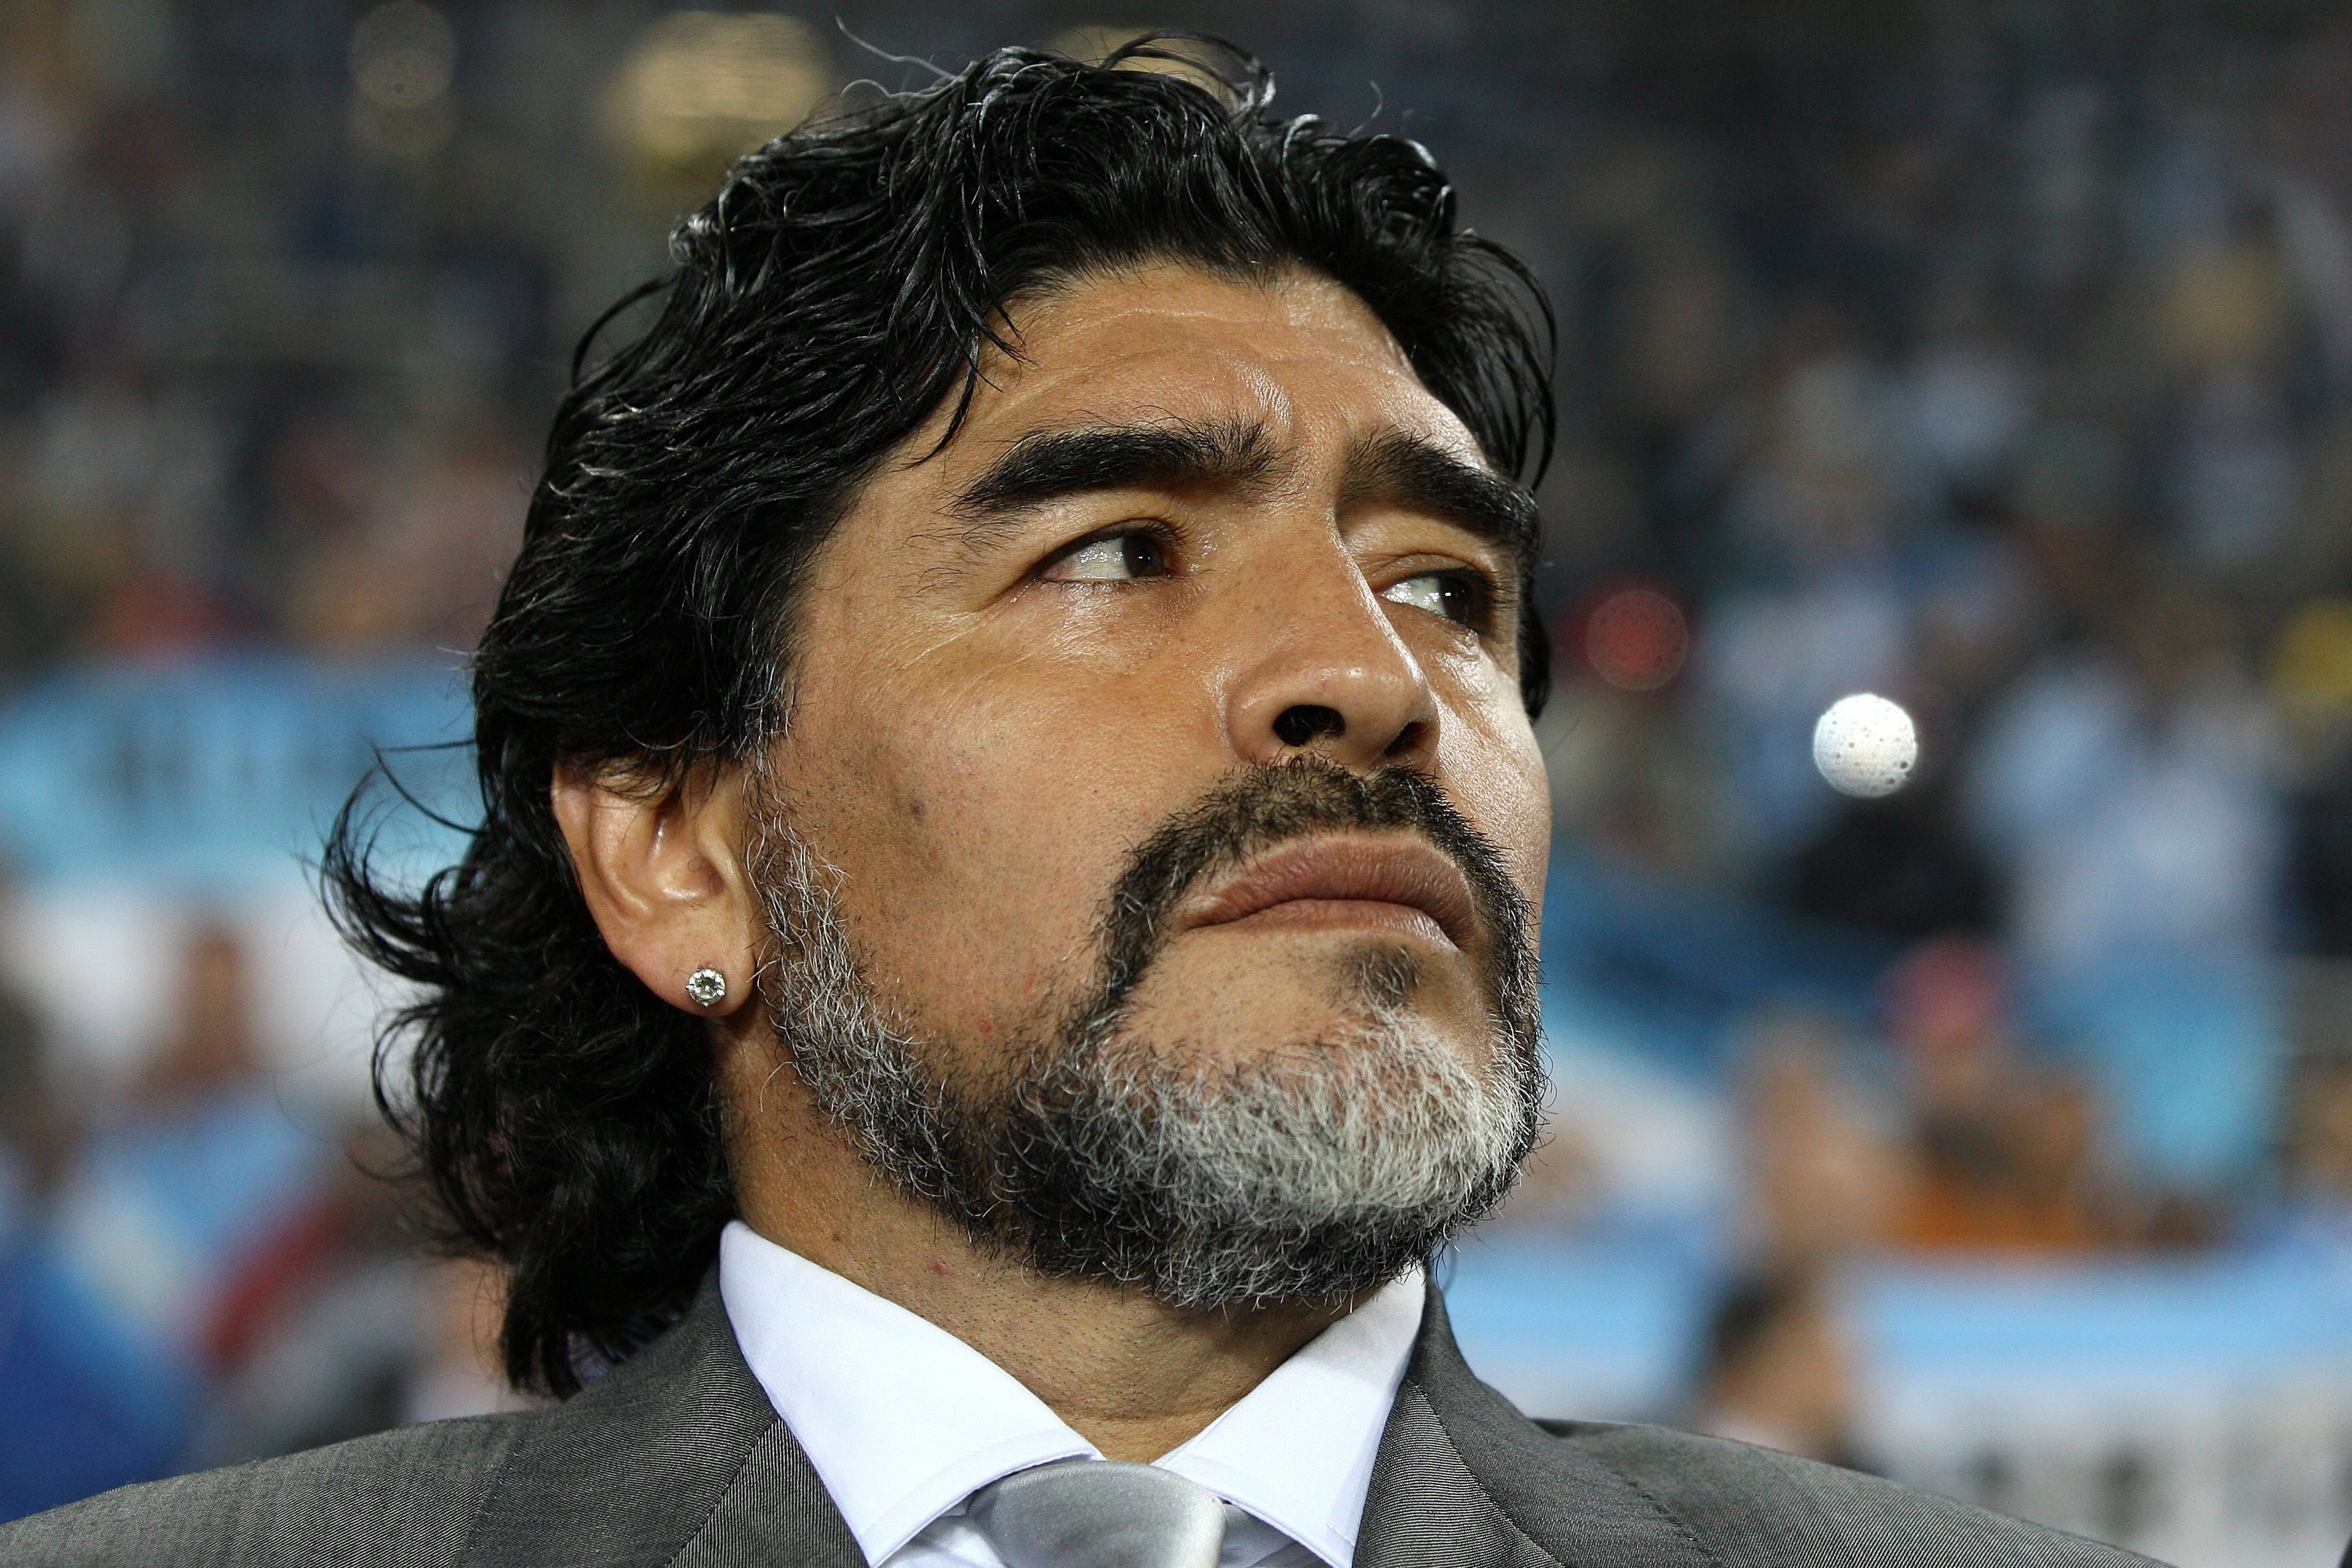 Kihantoltatná a nemrégiben elhunyt Maradona holttestét a fiatal fiú, aki a focista vérszerinti gyermekének vallja magát / Fotó: Northfoto